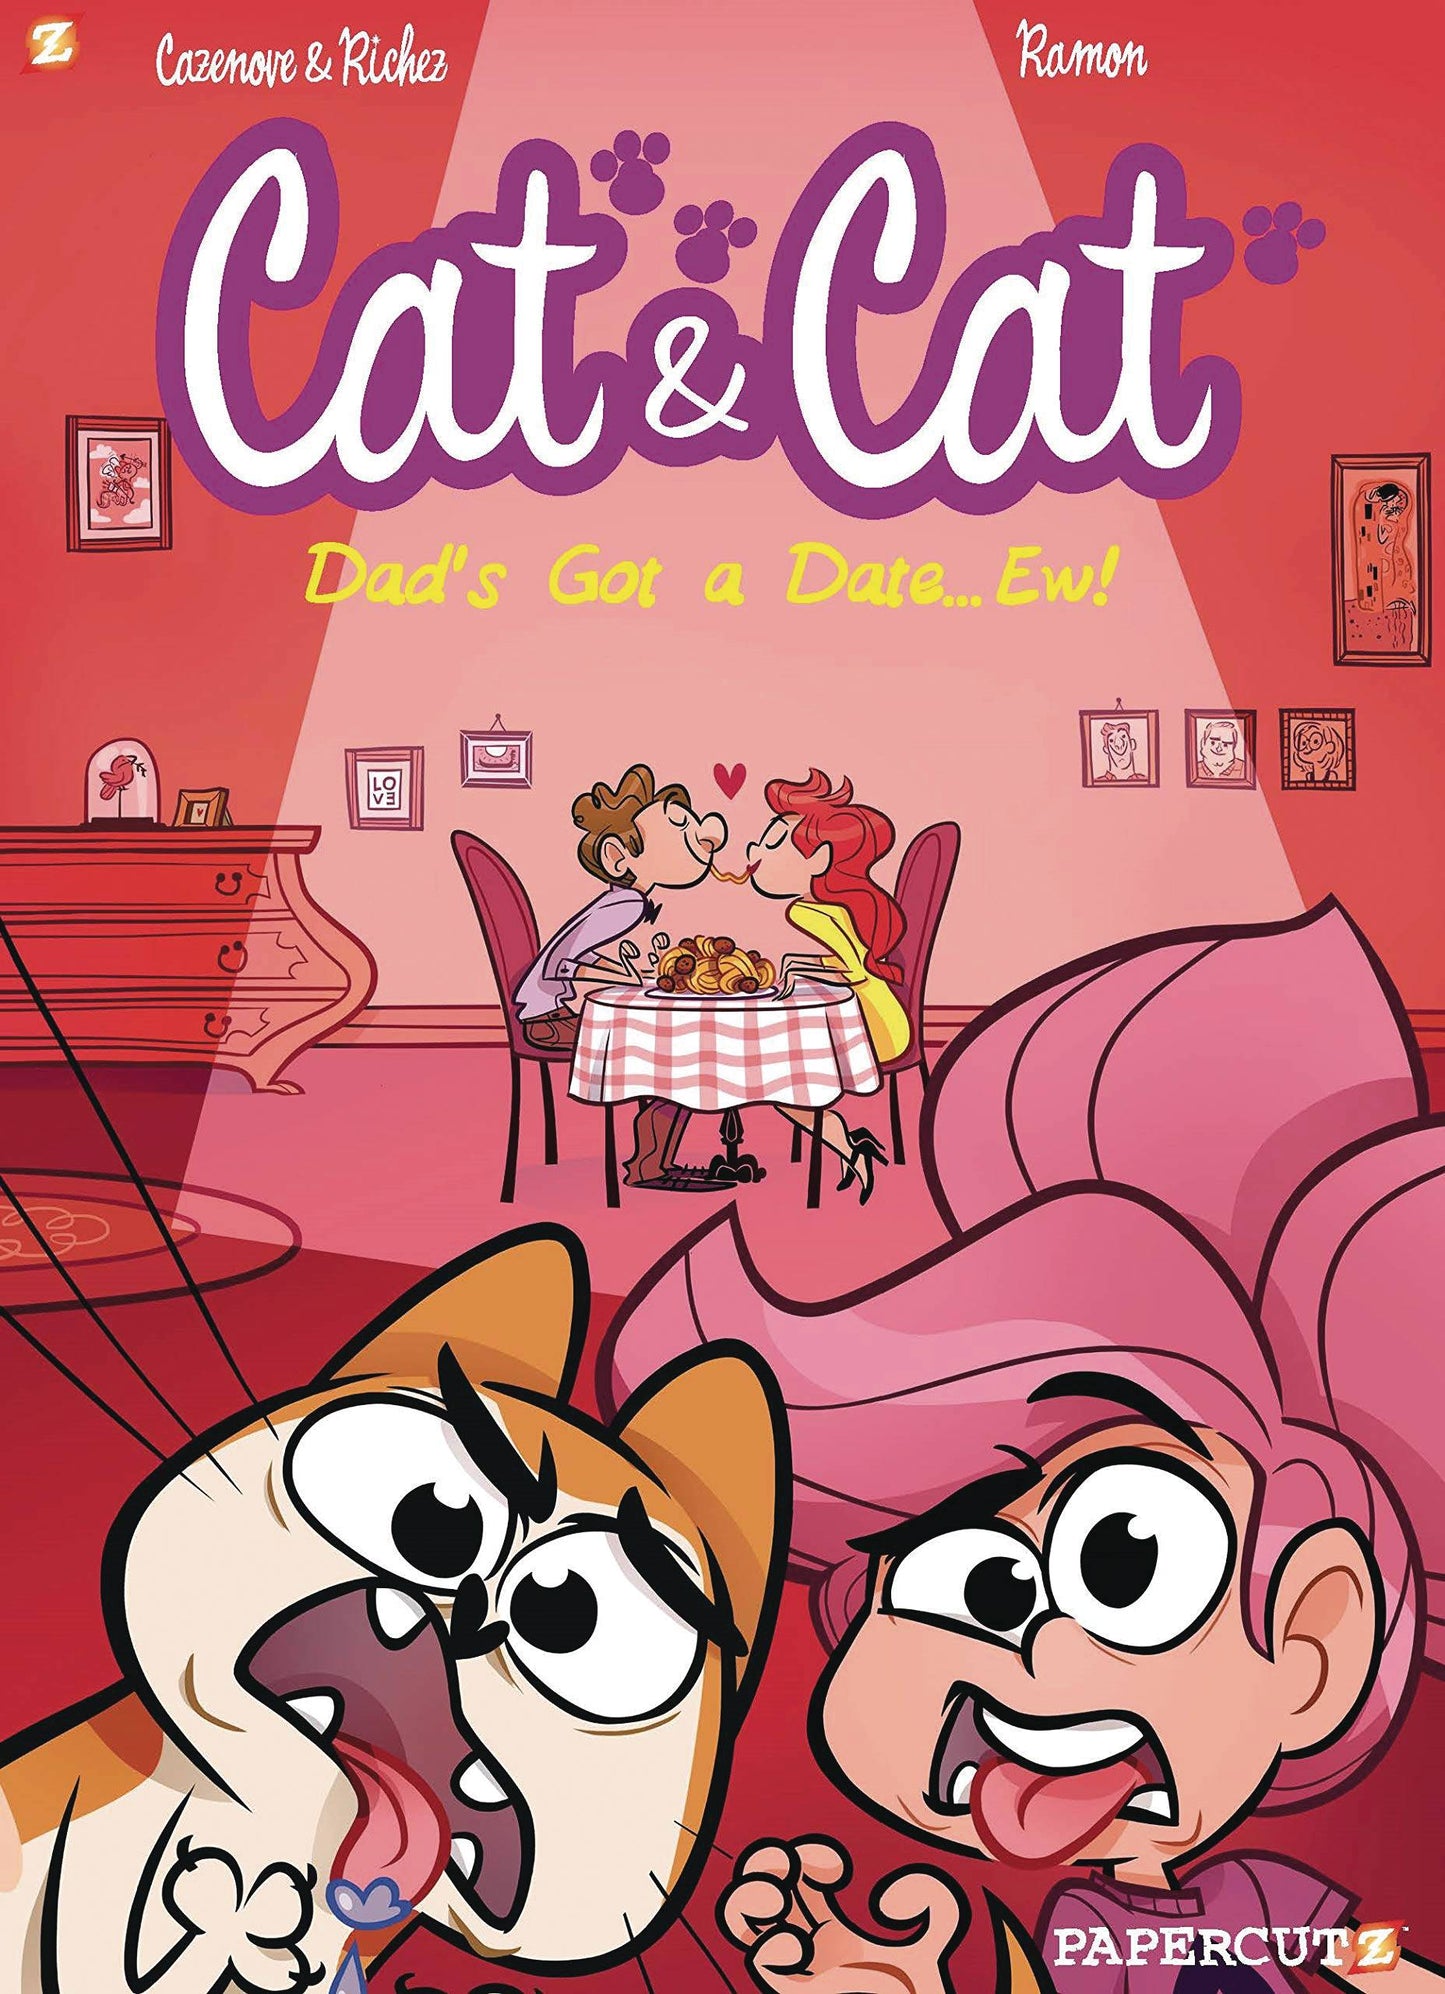 CAT & CAT VOL 03: MY DAD'S GOT A DATE, EW!